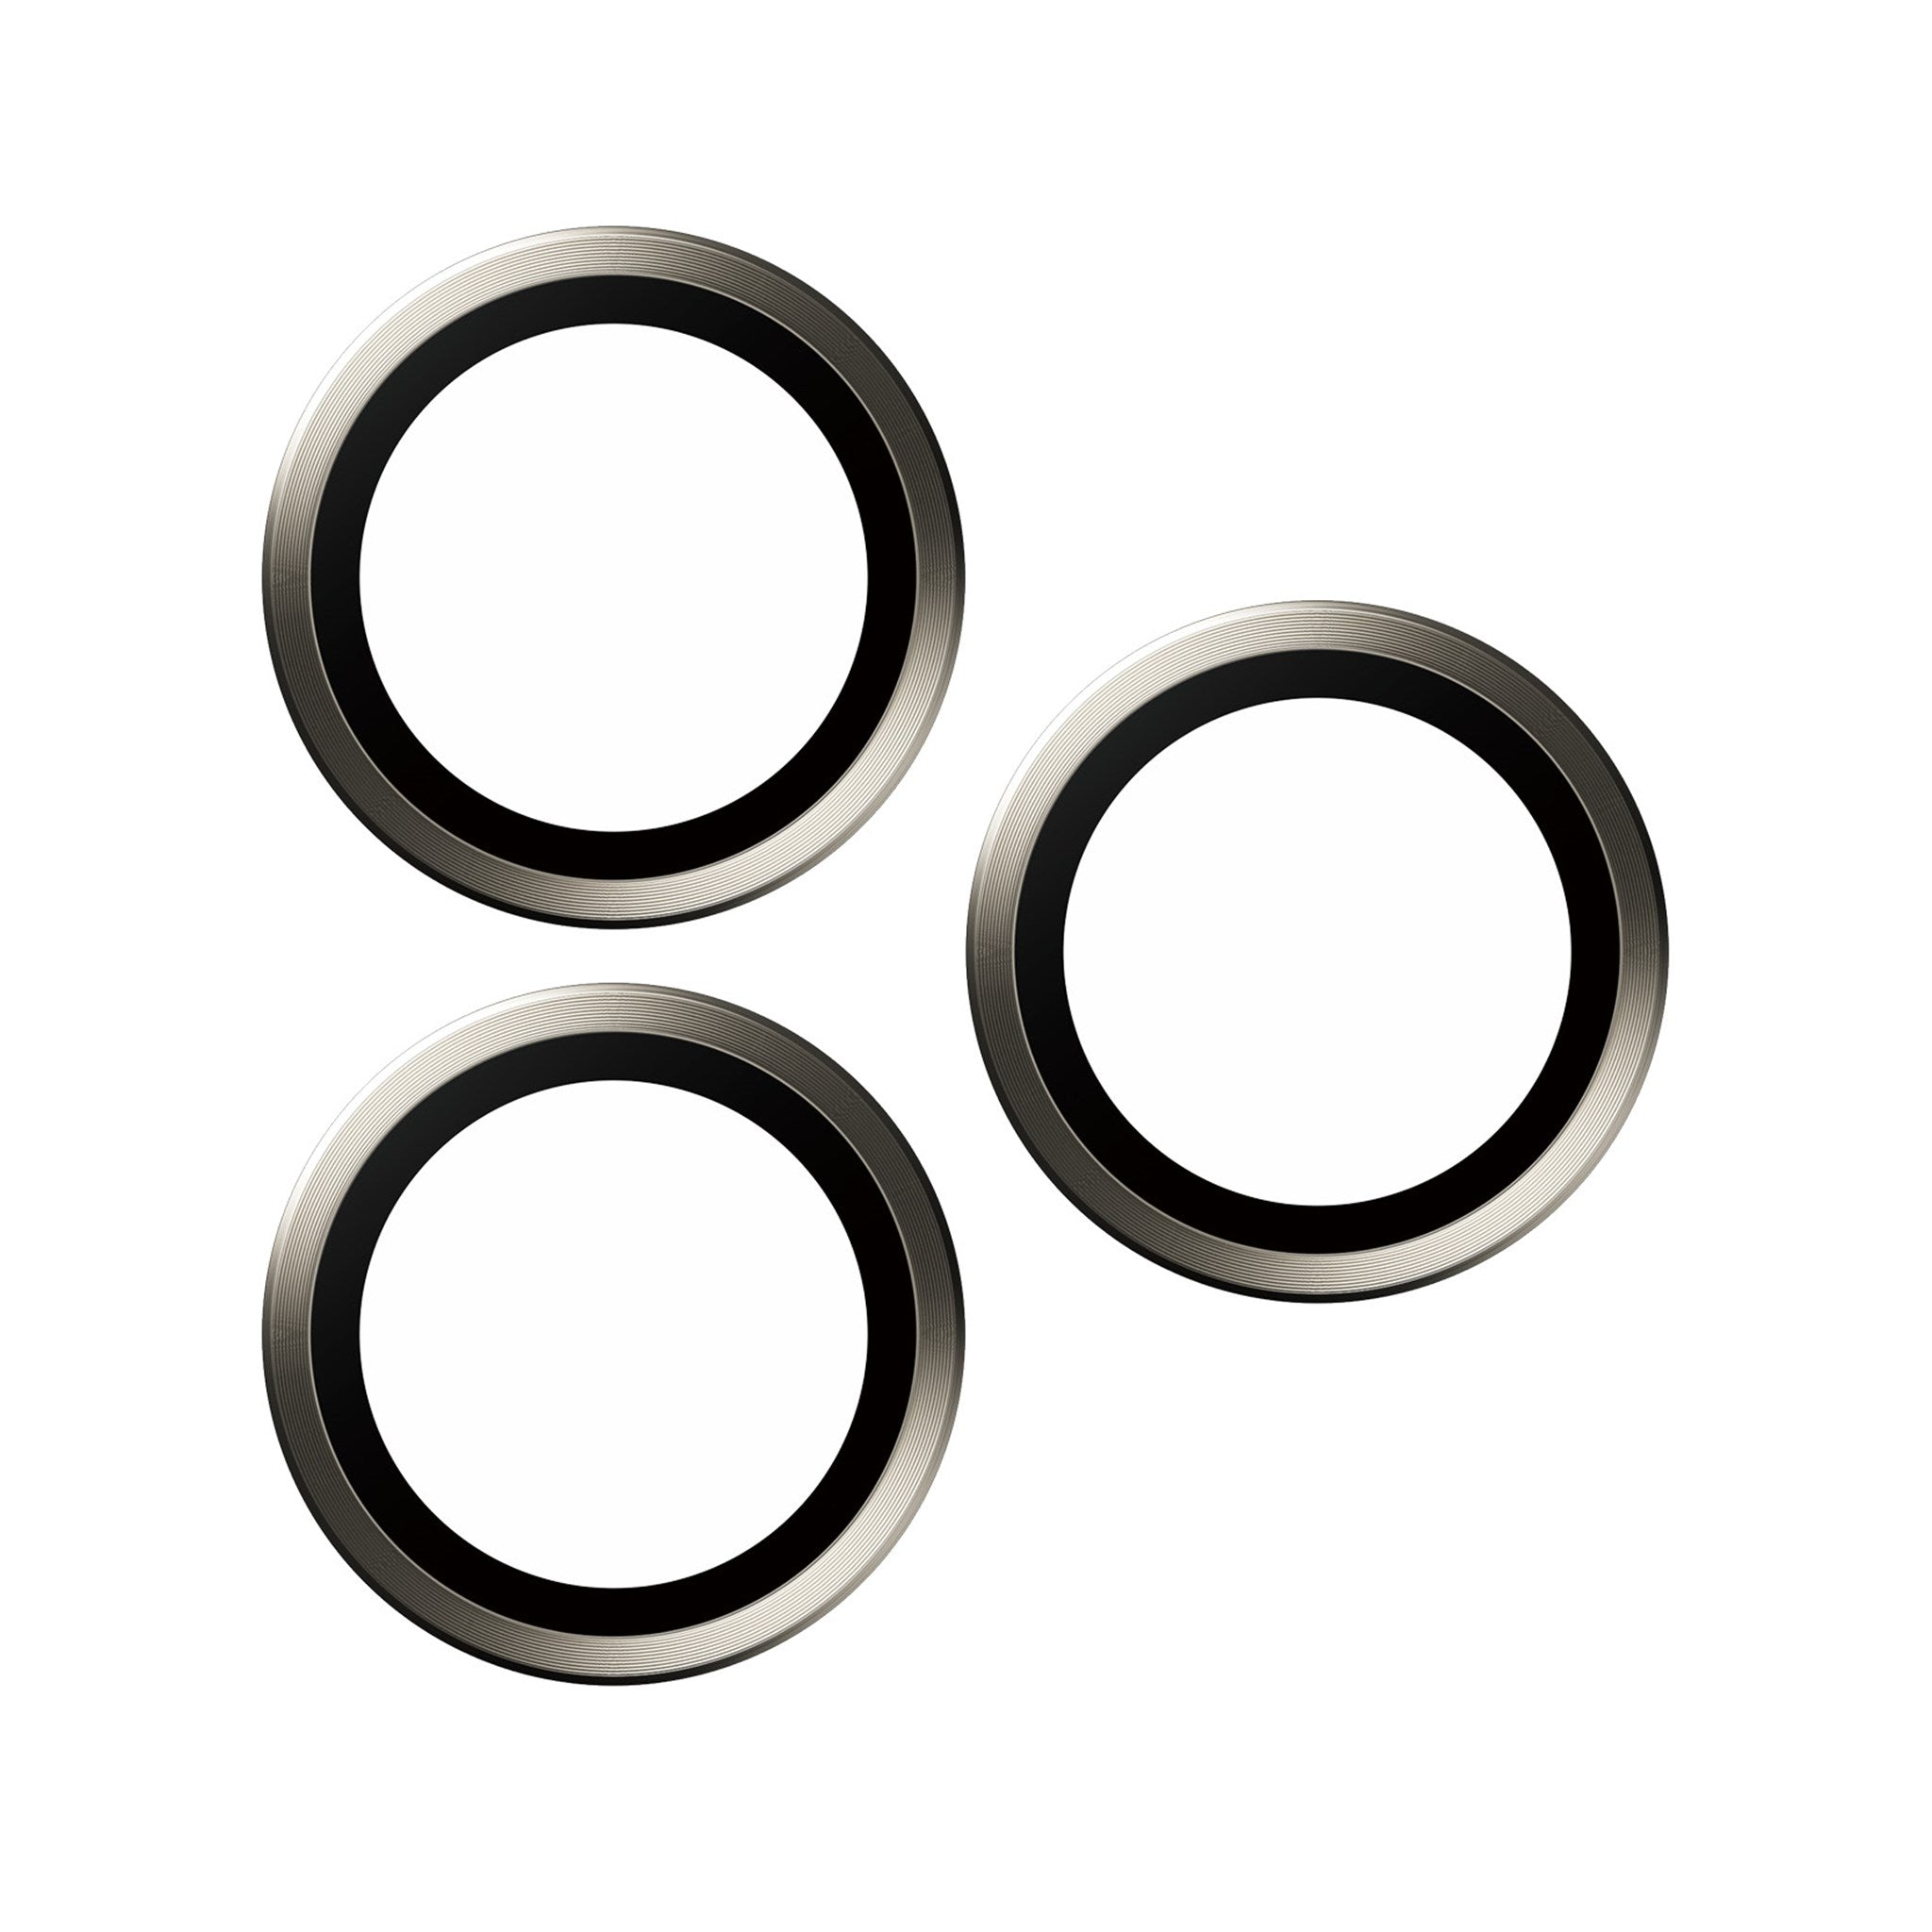 PANZERGLASS Hoops™ Titanium Kameraschutz Pro Kameraschutz(für | 15 15 iPhone | Apple Pro Max) Natürlich